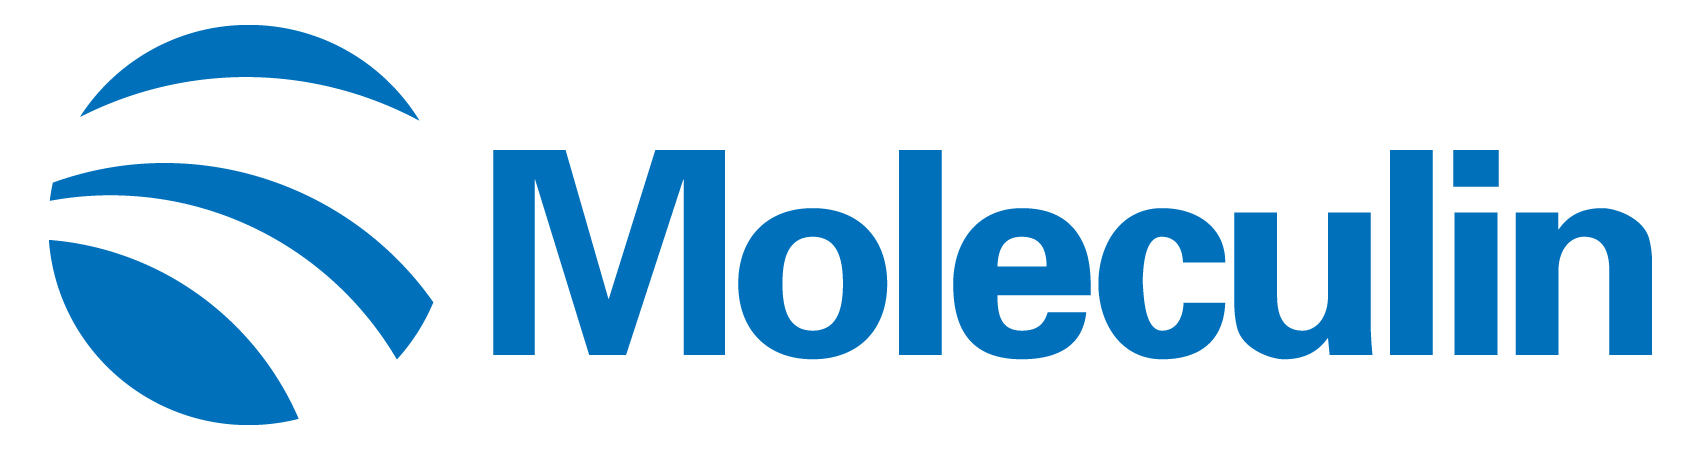 moleculin-logo_horiza49.jpg